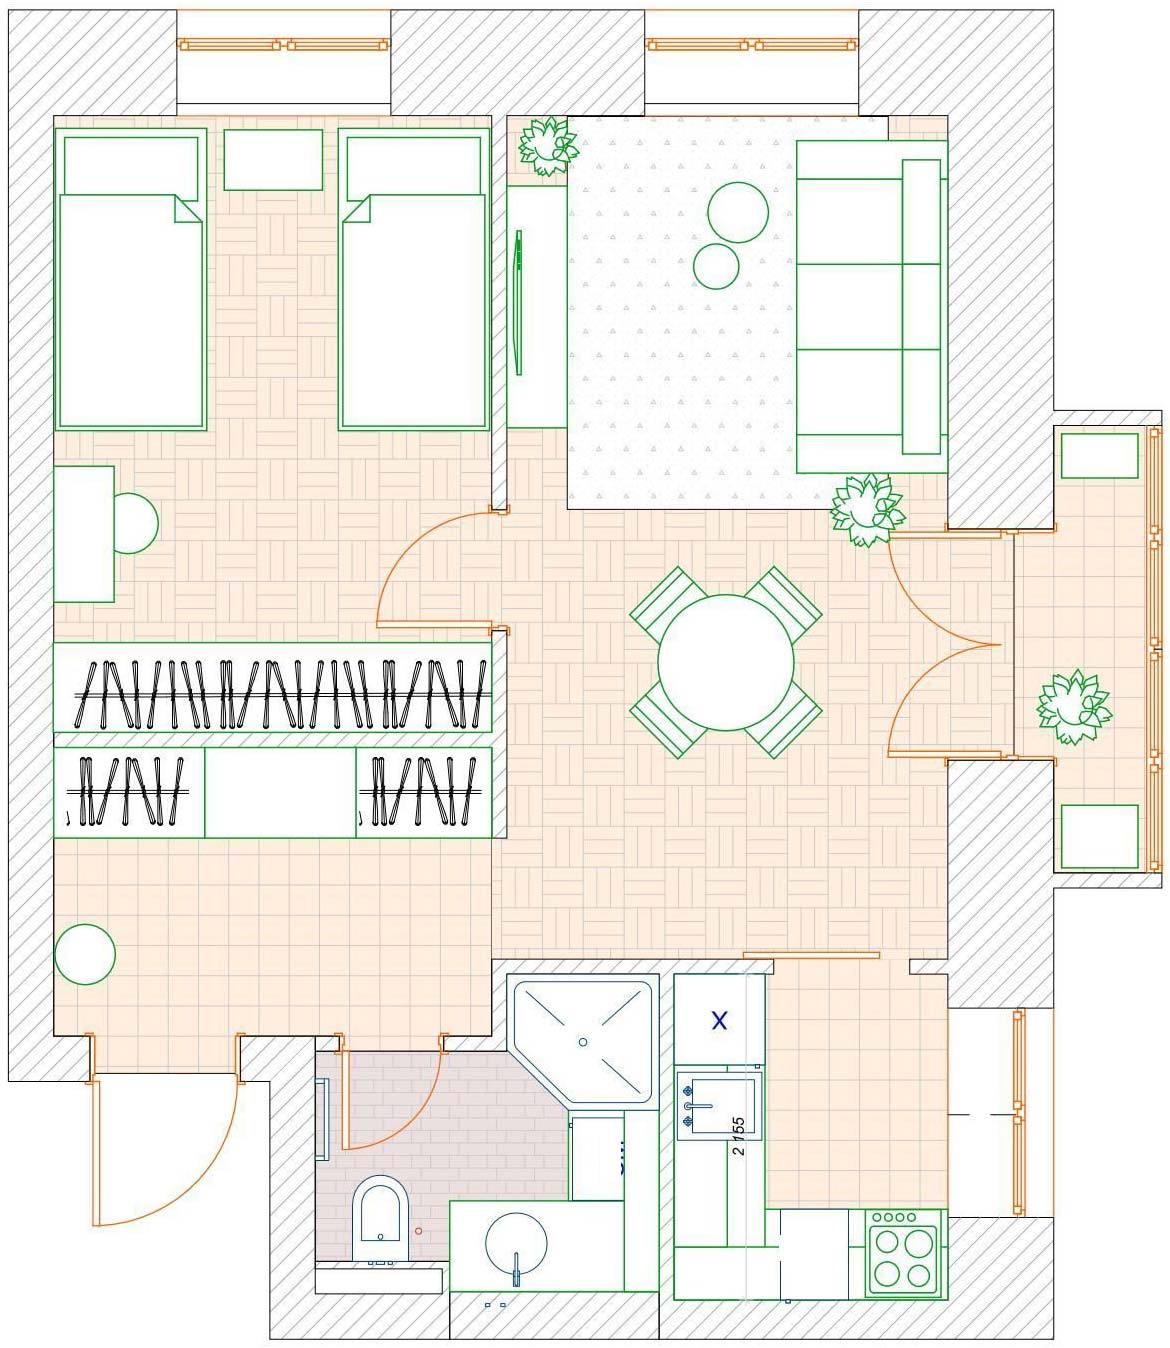 Sơ đồ thiết kế nội thất căn hộ diện tích 45m² của cặp vợ chồng lớn tuổi do Markina Design Studio cung cấp.